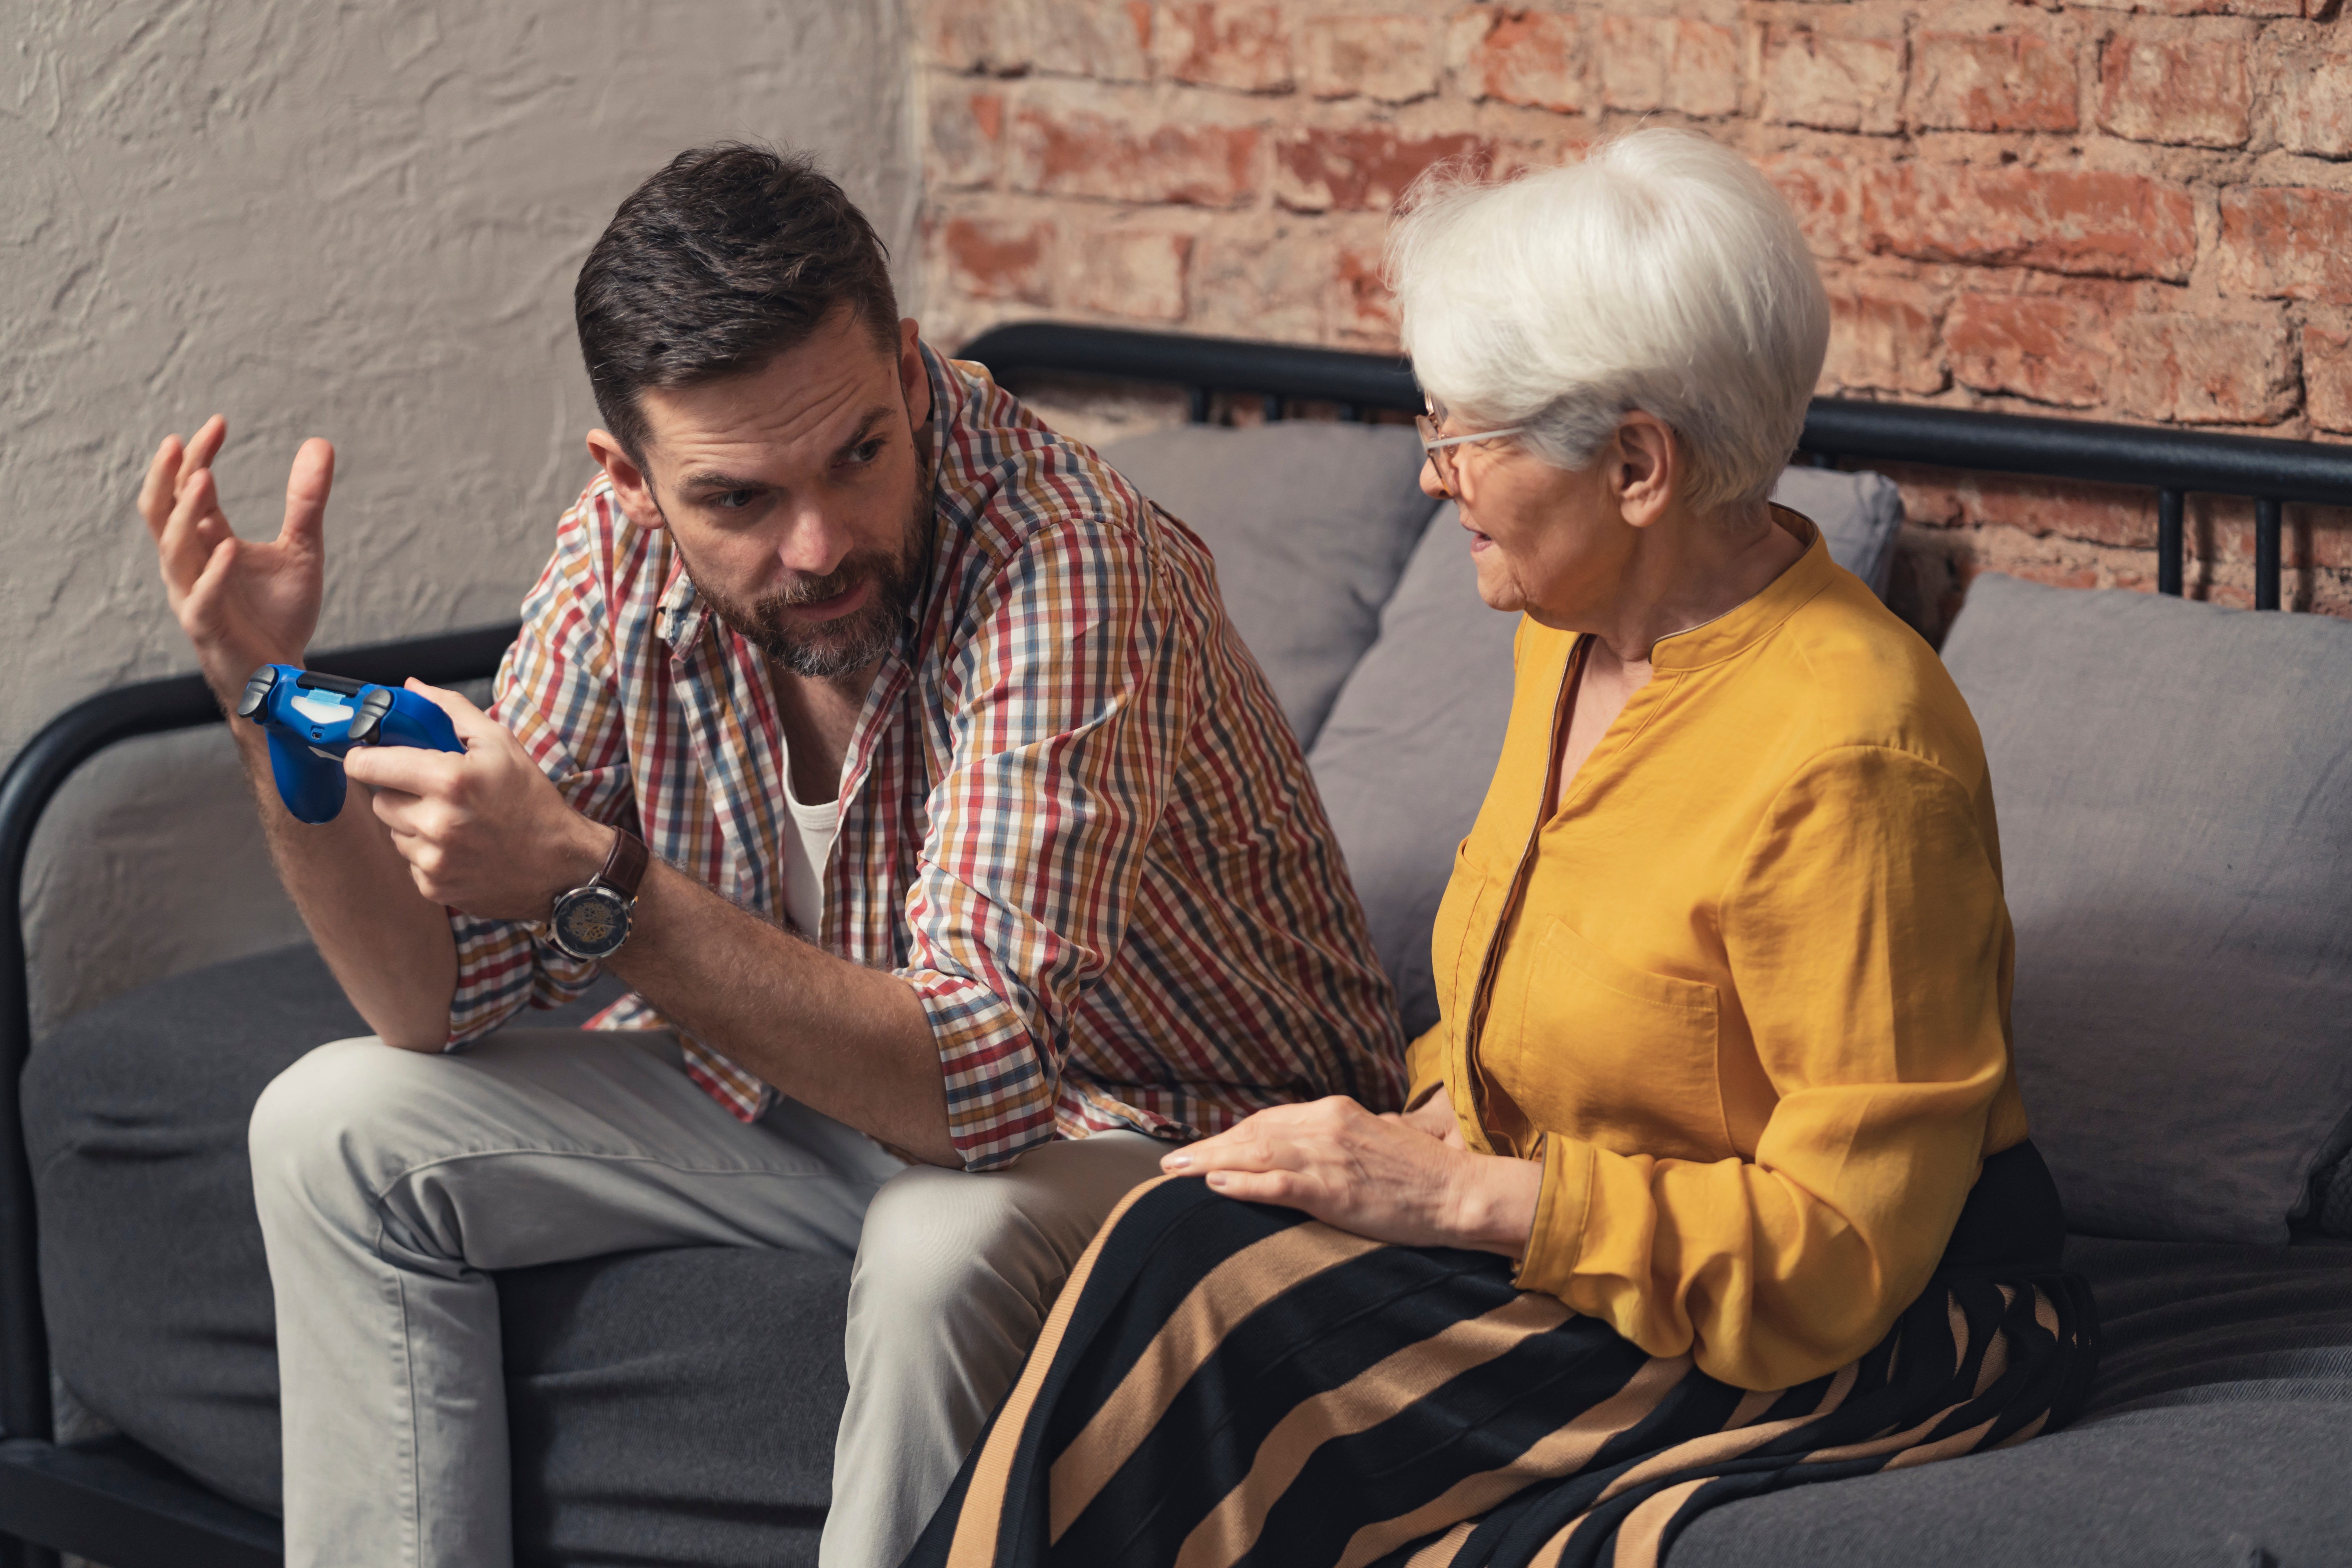 Un hombre sentado en un sofá sujetando un mando de videojuegos mientras gesticula con las manos a una señora mayor. | Foto: Shutterstock